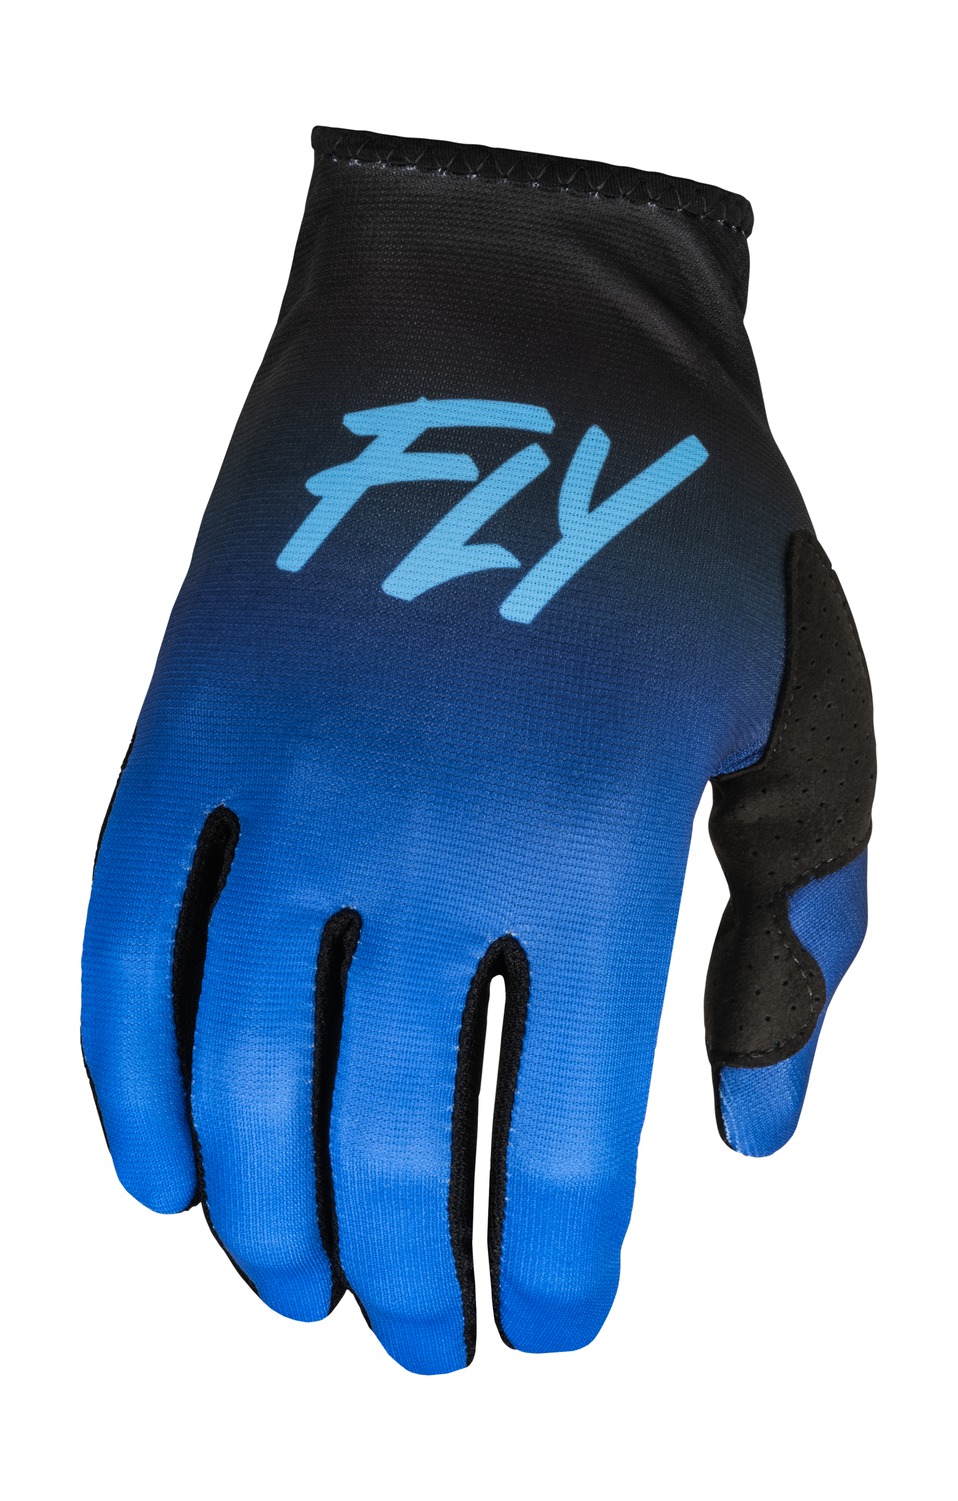 rukavice LITE, FLY RACING - USA 2023 dámské (modrá/černá)